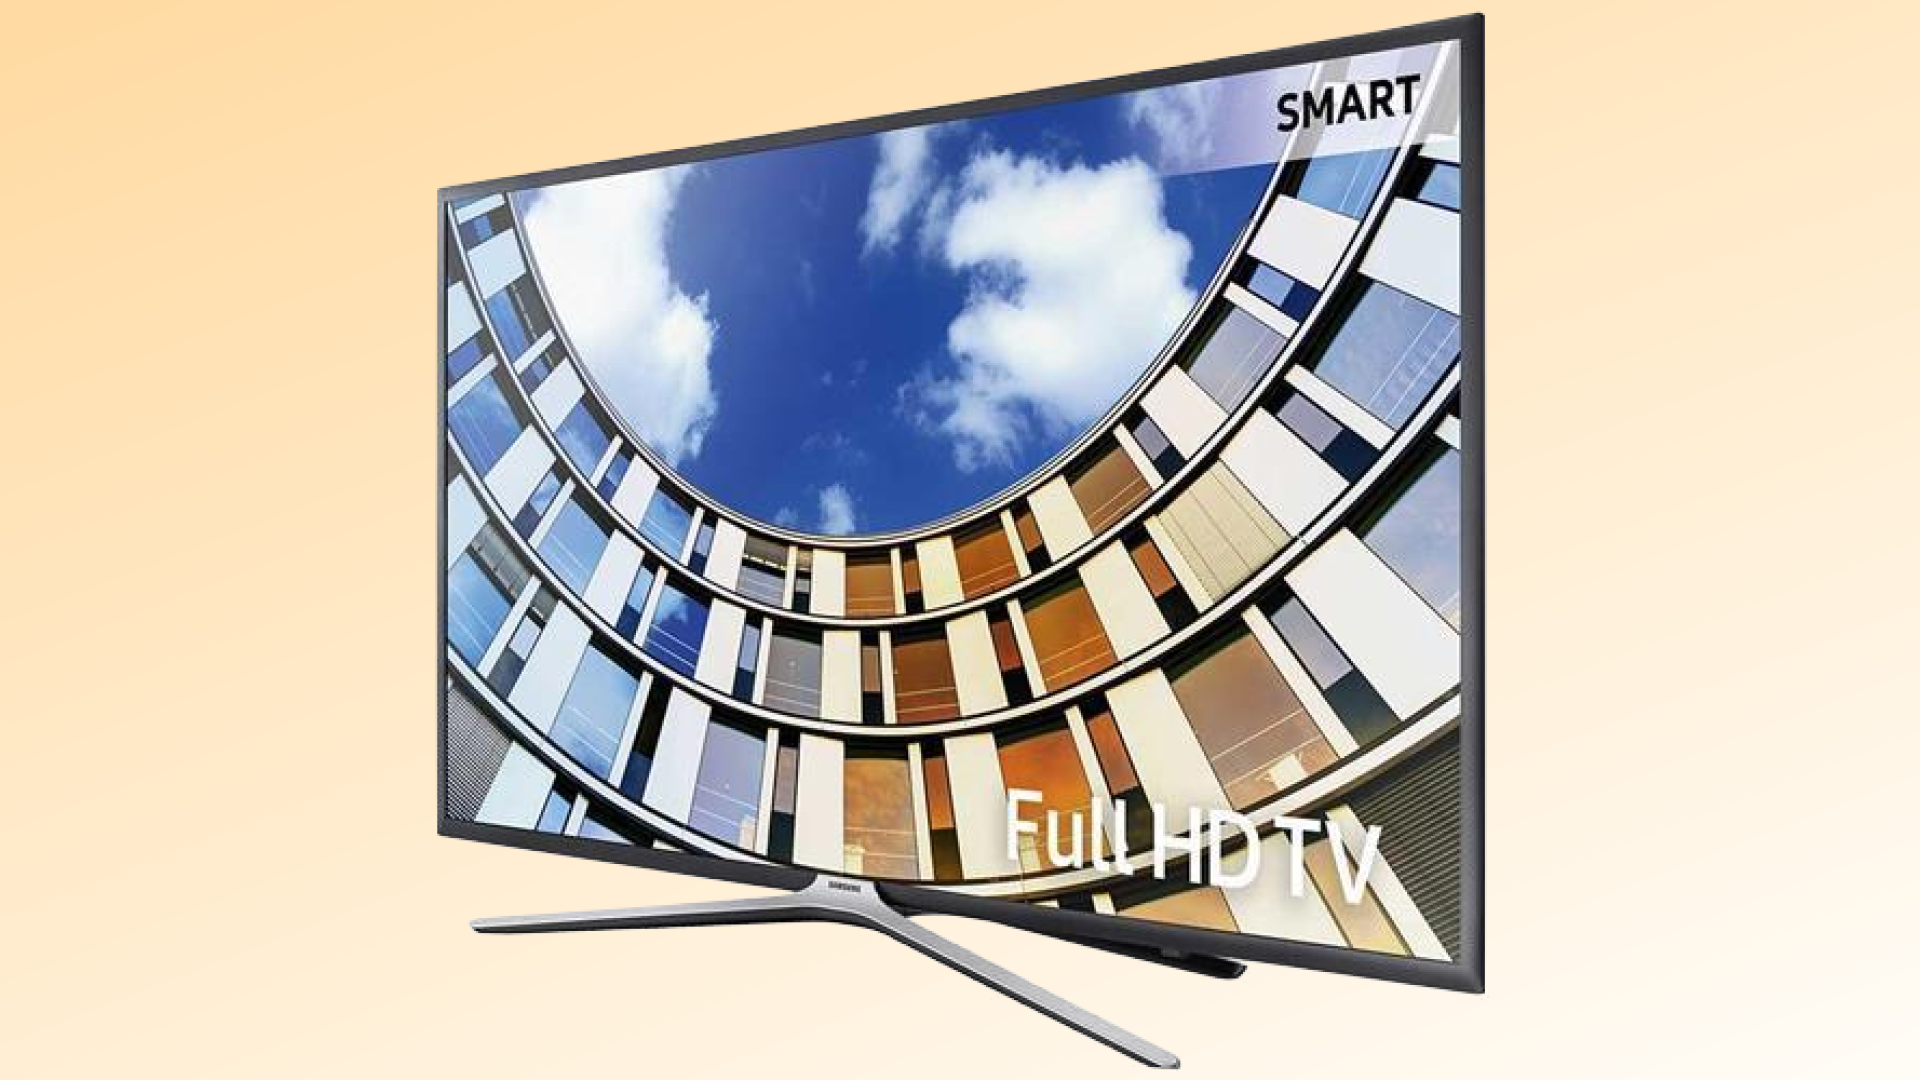 Samsung Smart TV 49" Full HD